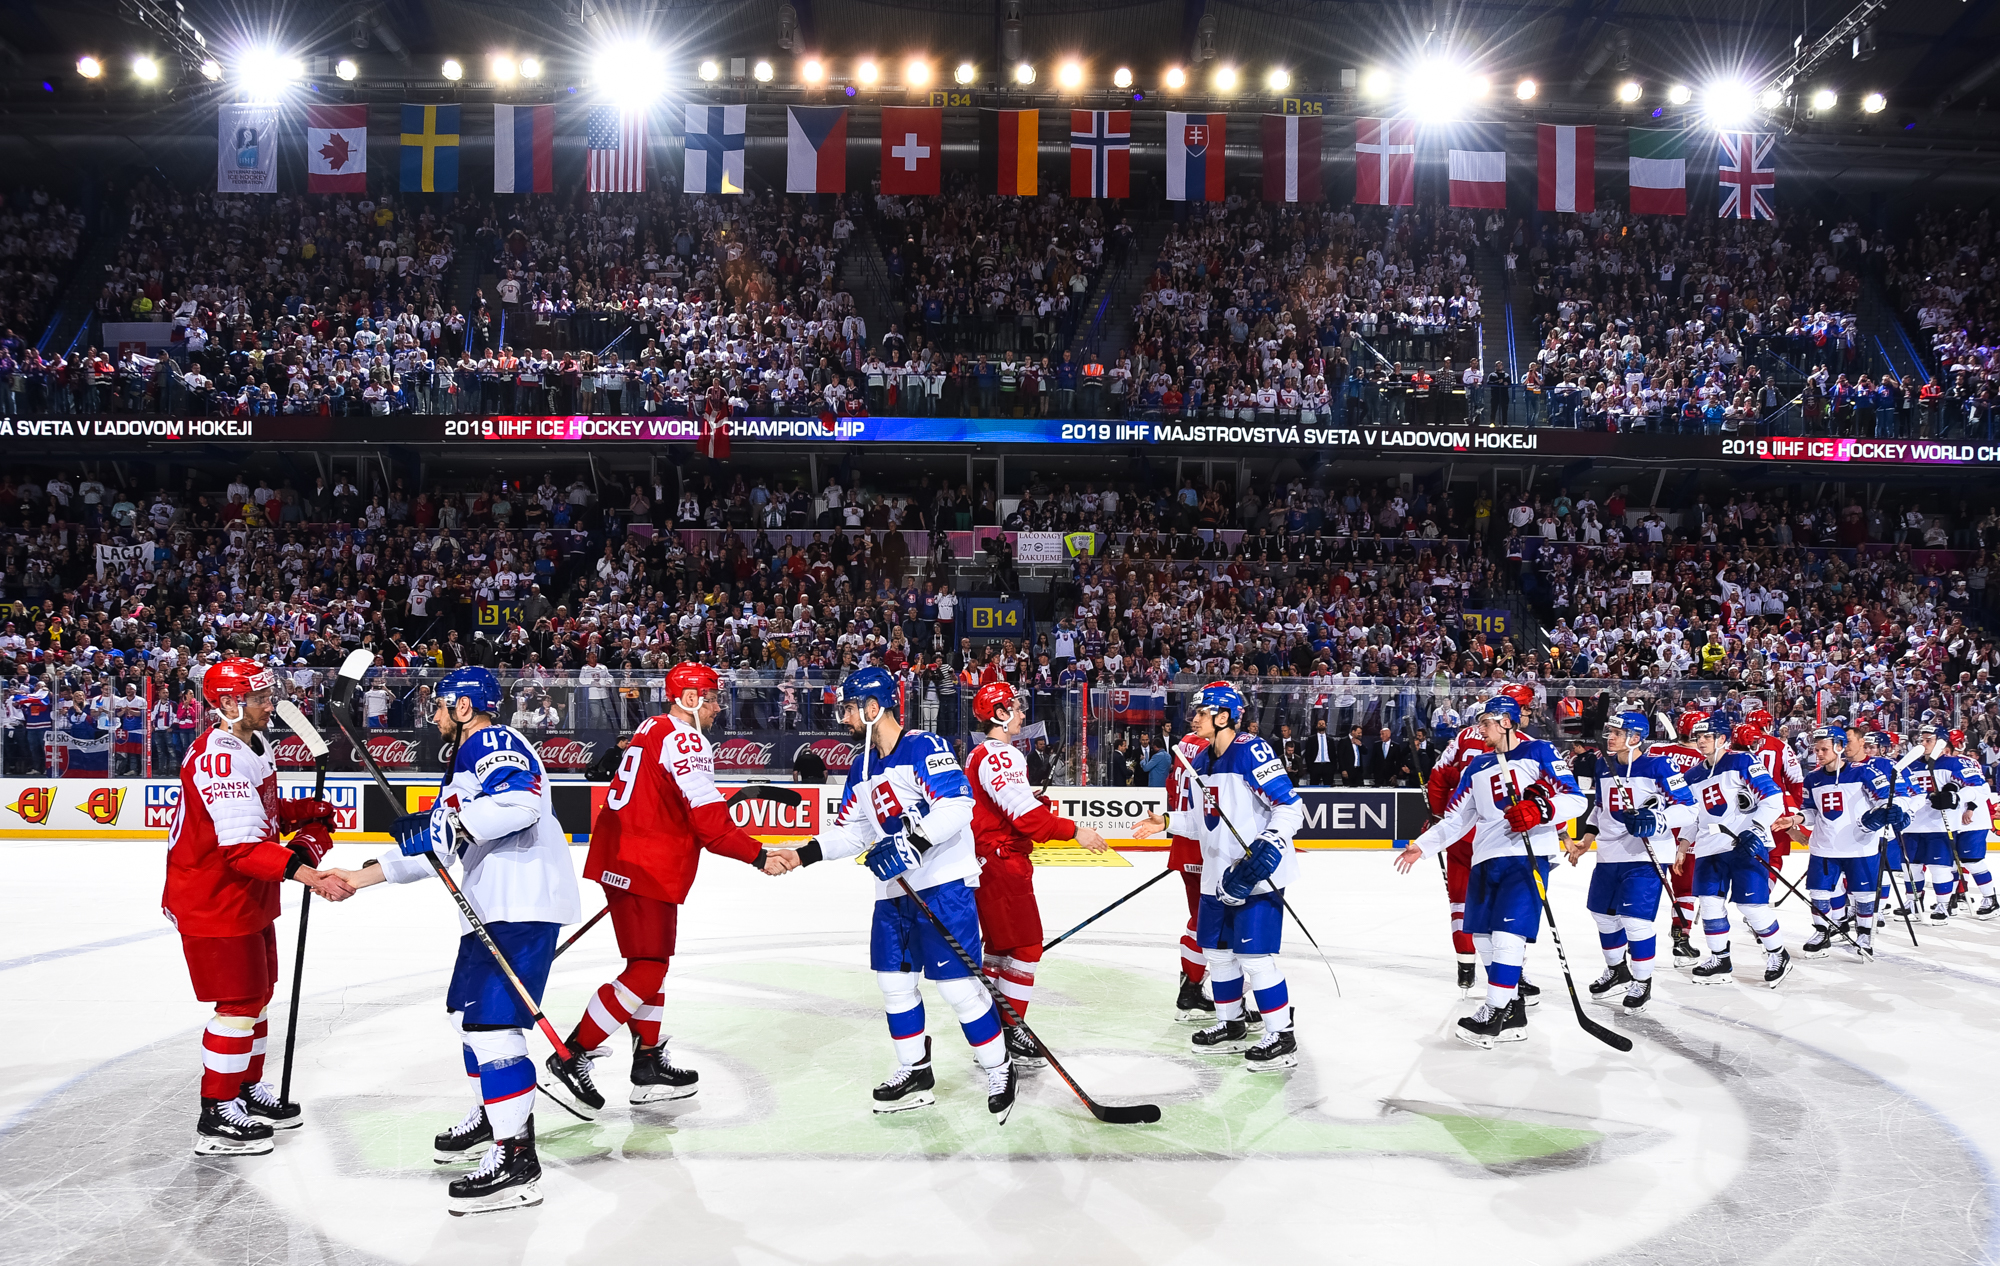 IIHF - Gallery: Slovakia 2019 IIHF Ice Hockey World Championship